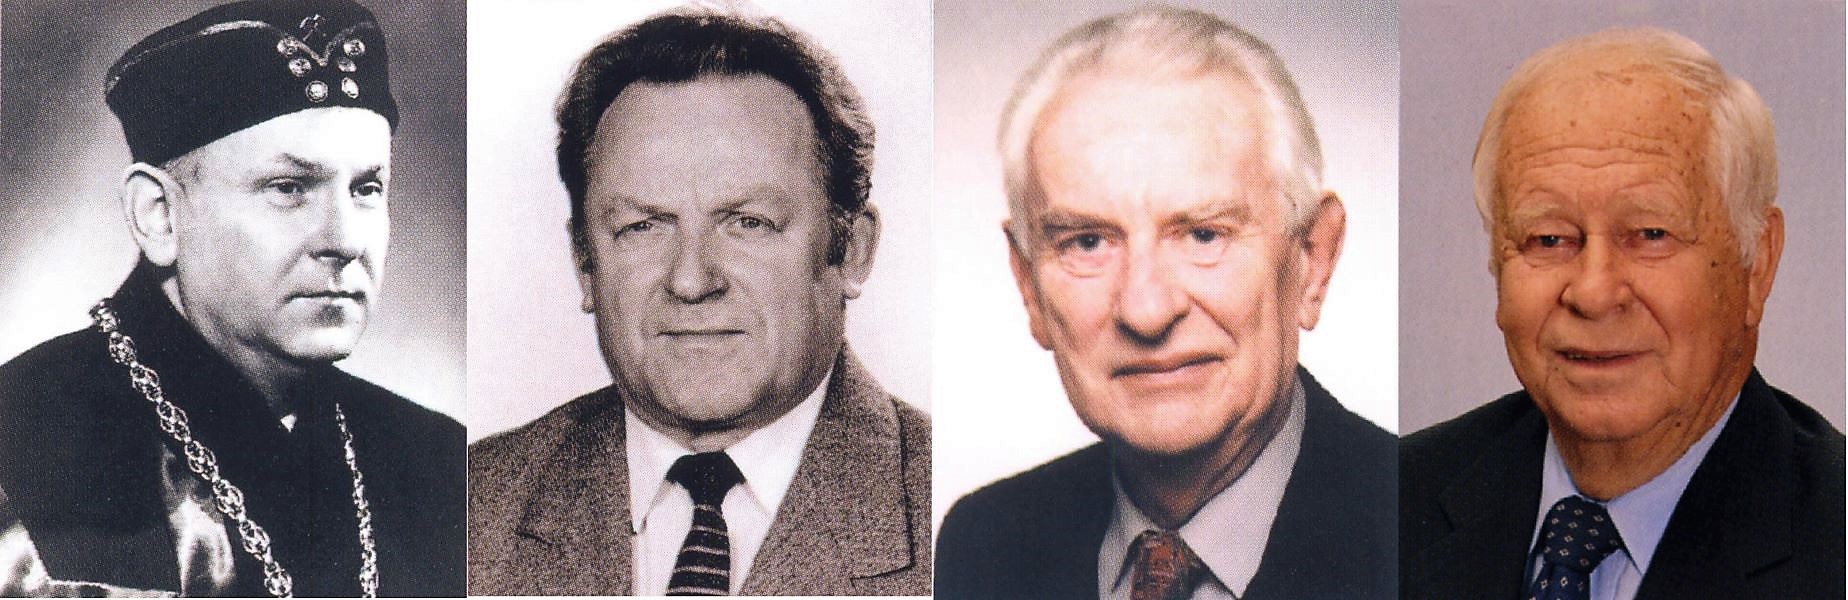 Galerie vedoucích (zleva: 1963-1974 prof. Mydlarčík, 1974-1980 prof. Mynář, 1980-1989 prof. Vnuk, 1989-2004 prof. Dejl)